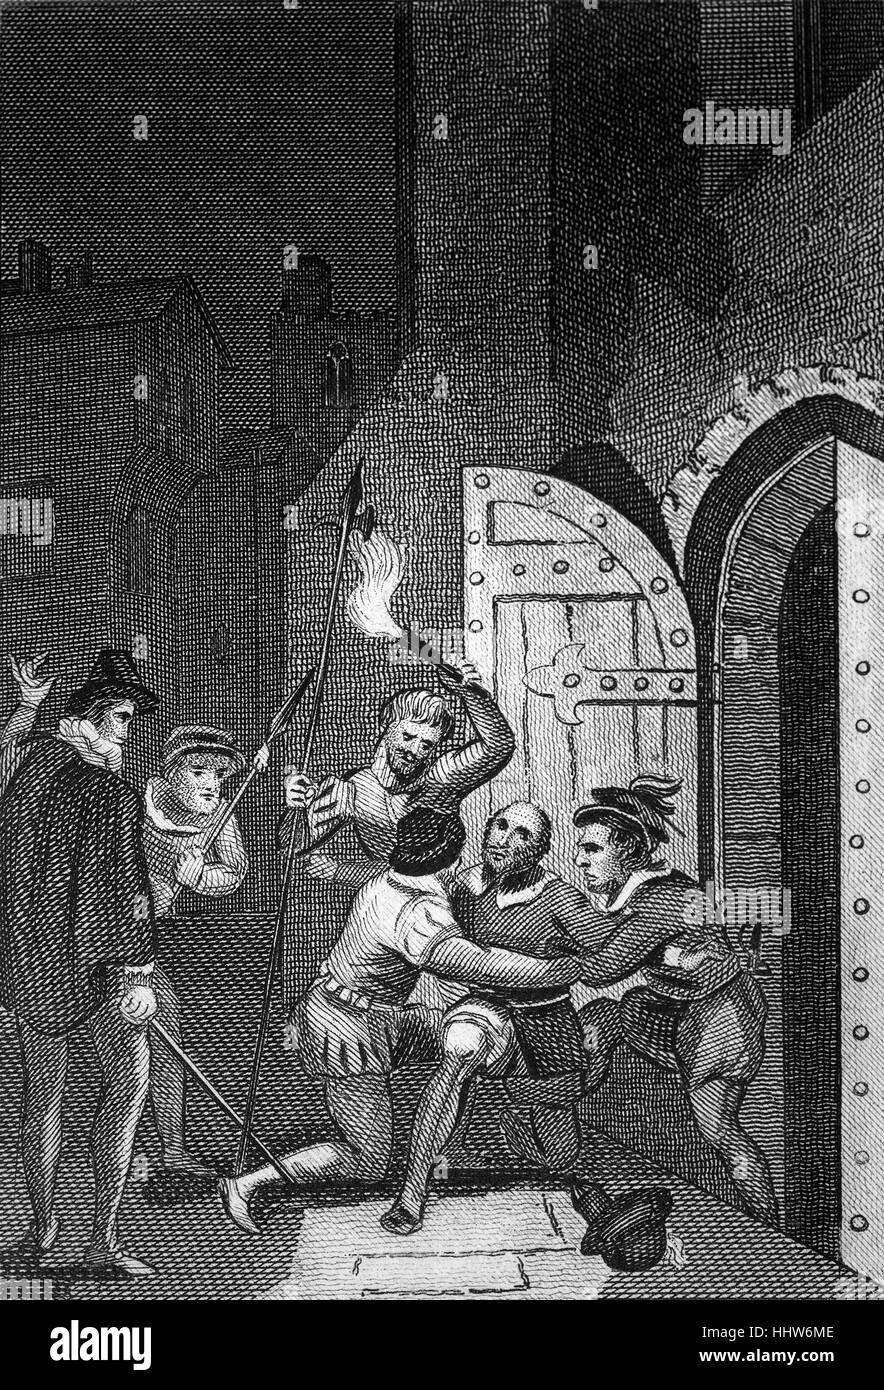 Guy Fawkes (1570 - 1606) era un membro di un gruppo provinciale di cattolici inglesi che hanno pianificato la polvere da sparo non riuscita appezzamento di 1605. Fawkes finale del ruolo nel complotto è stato alla luce il fusibile e la fuga attraverso il Tamigi.Egli ha preso la sua stazione di ritardo sulla notte precedente, armati con una lenta match e un orologio. Egli è stato trovato lasciando la cantina, poco dopo la mezzanotte, e arrestato. All'interno, i barili di polvere da sparo sono stati scoperti nascosti sotto cataste di legna da ardere e carbone. Foto Stock